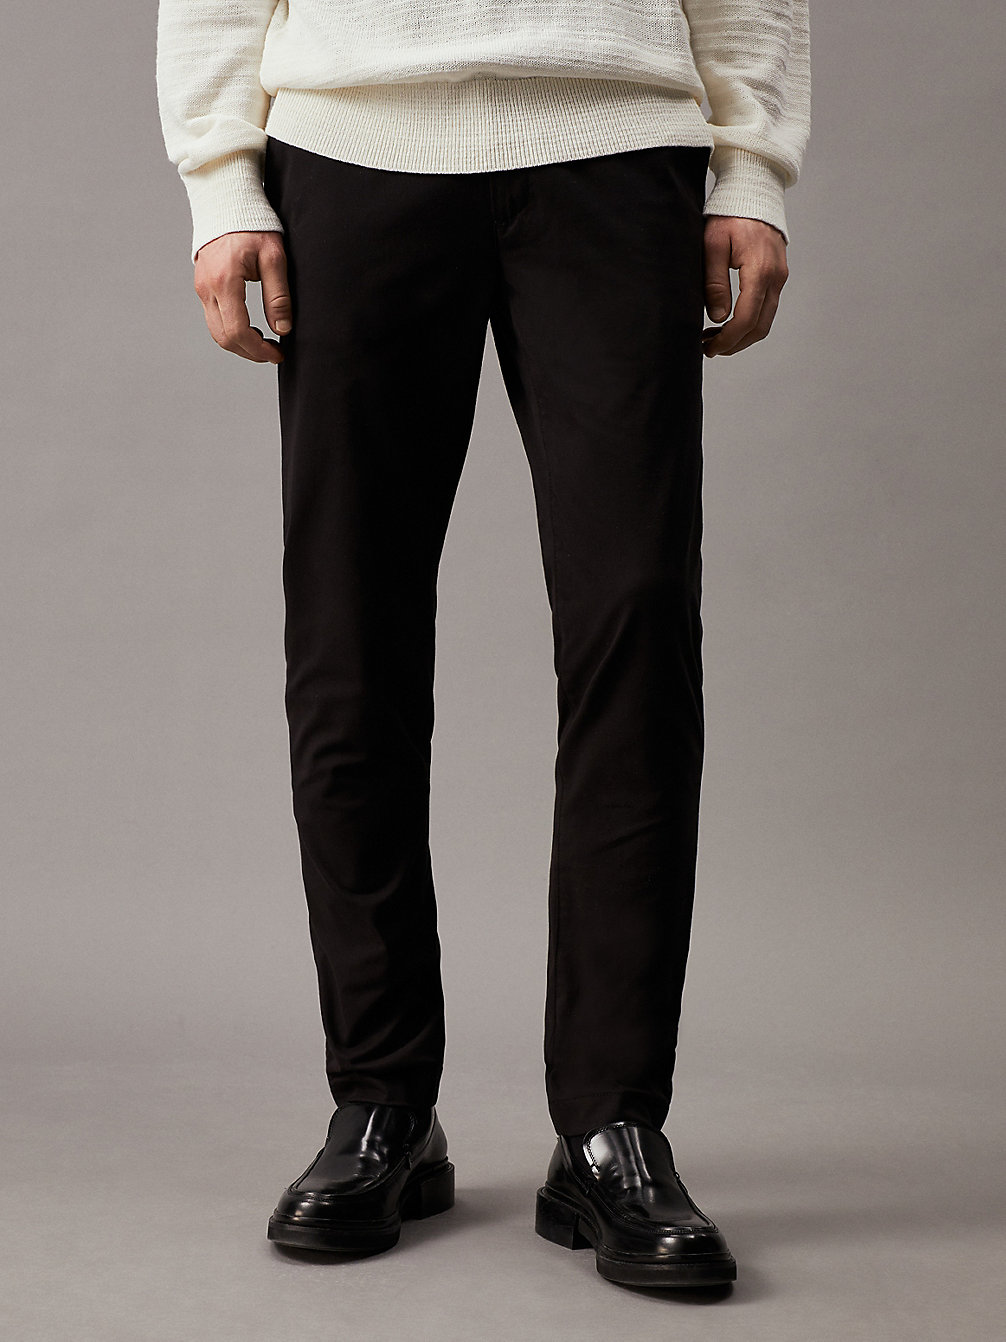 CK BLACK Pantalon Slim Chino undefined hommes Calvin Klein